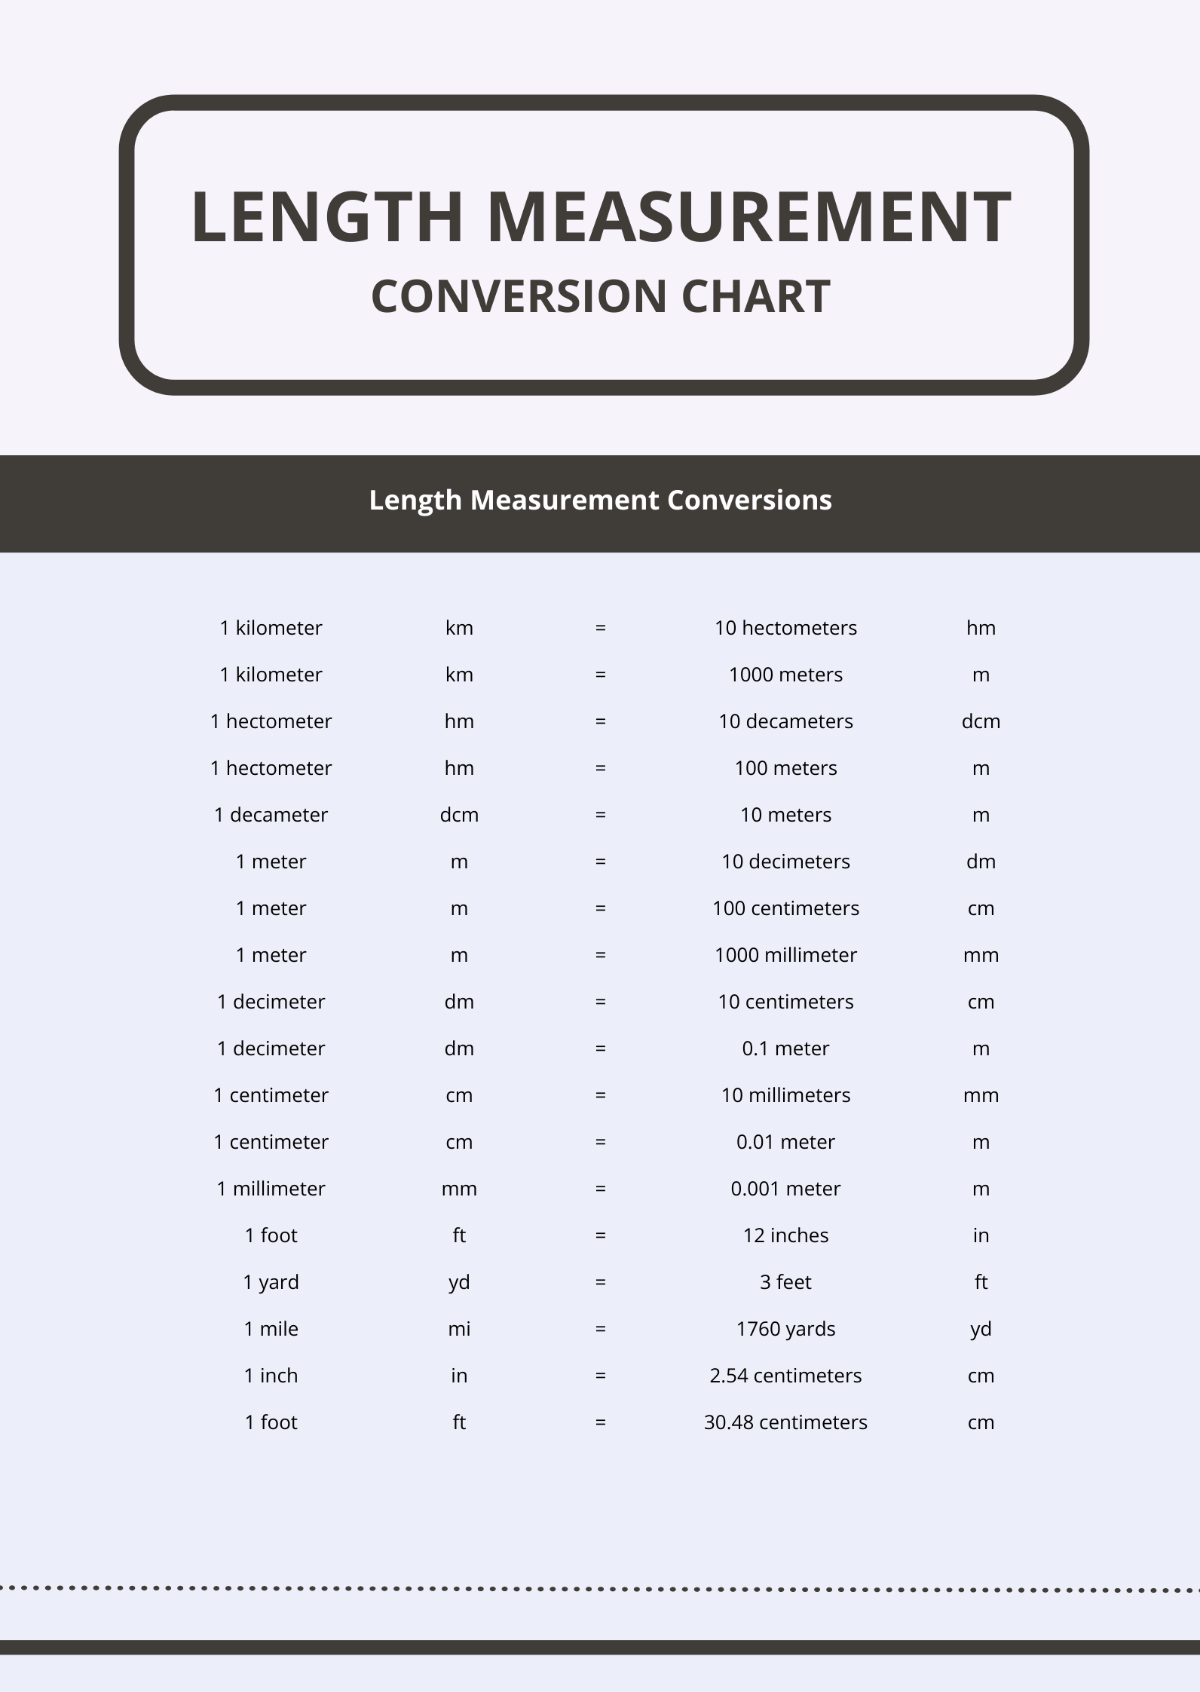 Length Measurement Conversion Chart Template